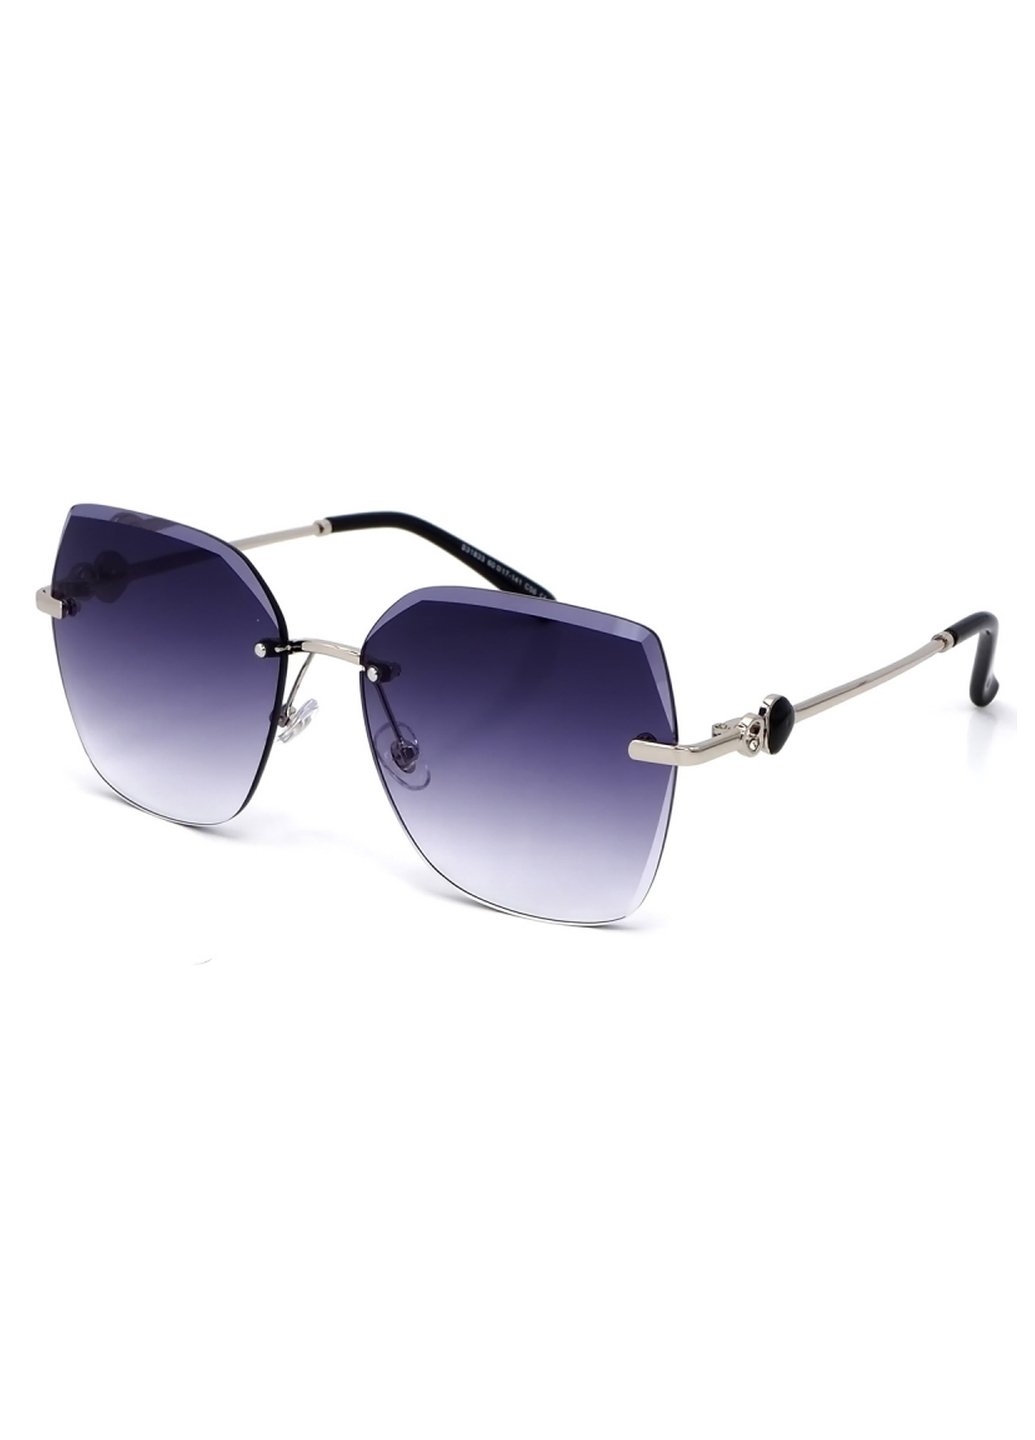 Купить Женские солнцезащитные очки Merlini с поляризацией S31833 117091 - Серый в интернет-магазине